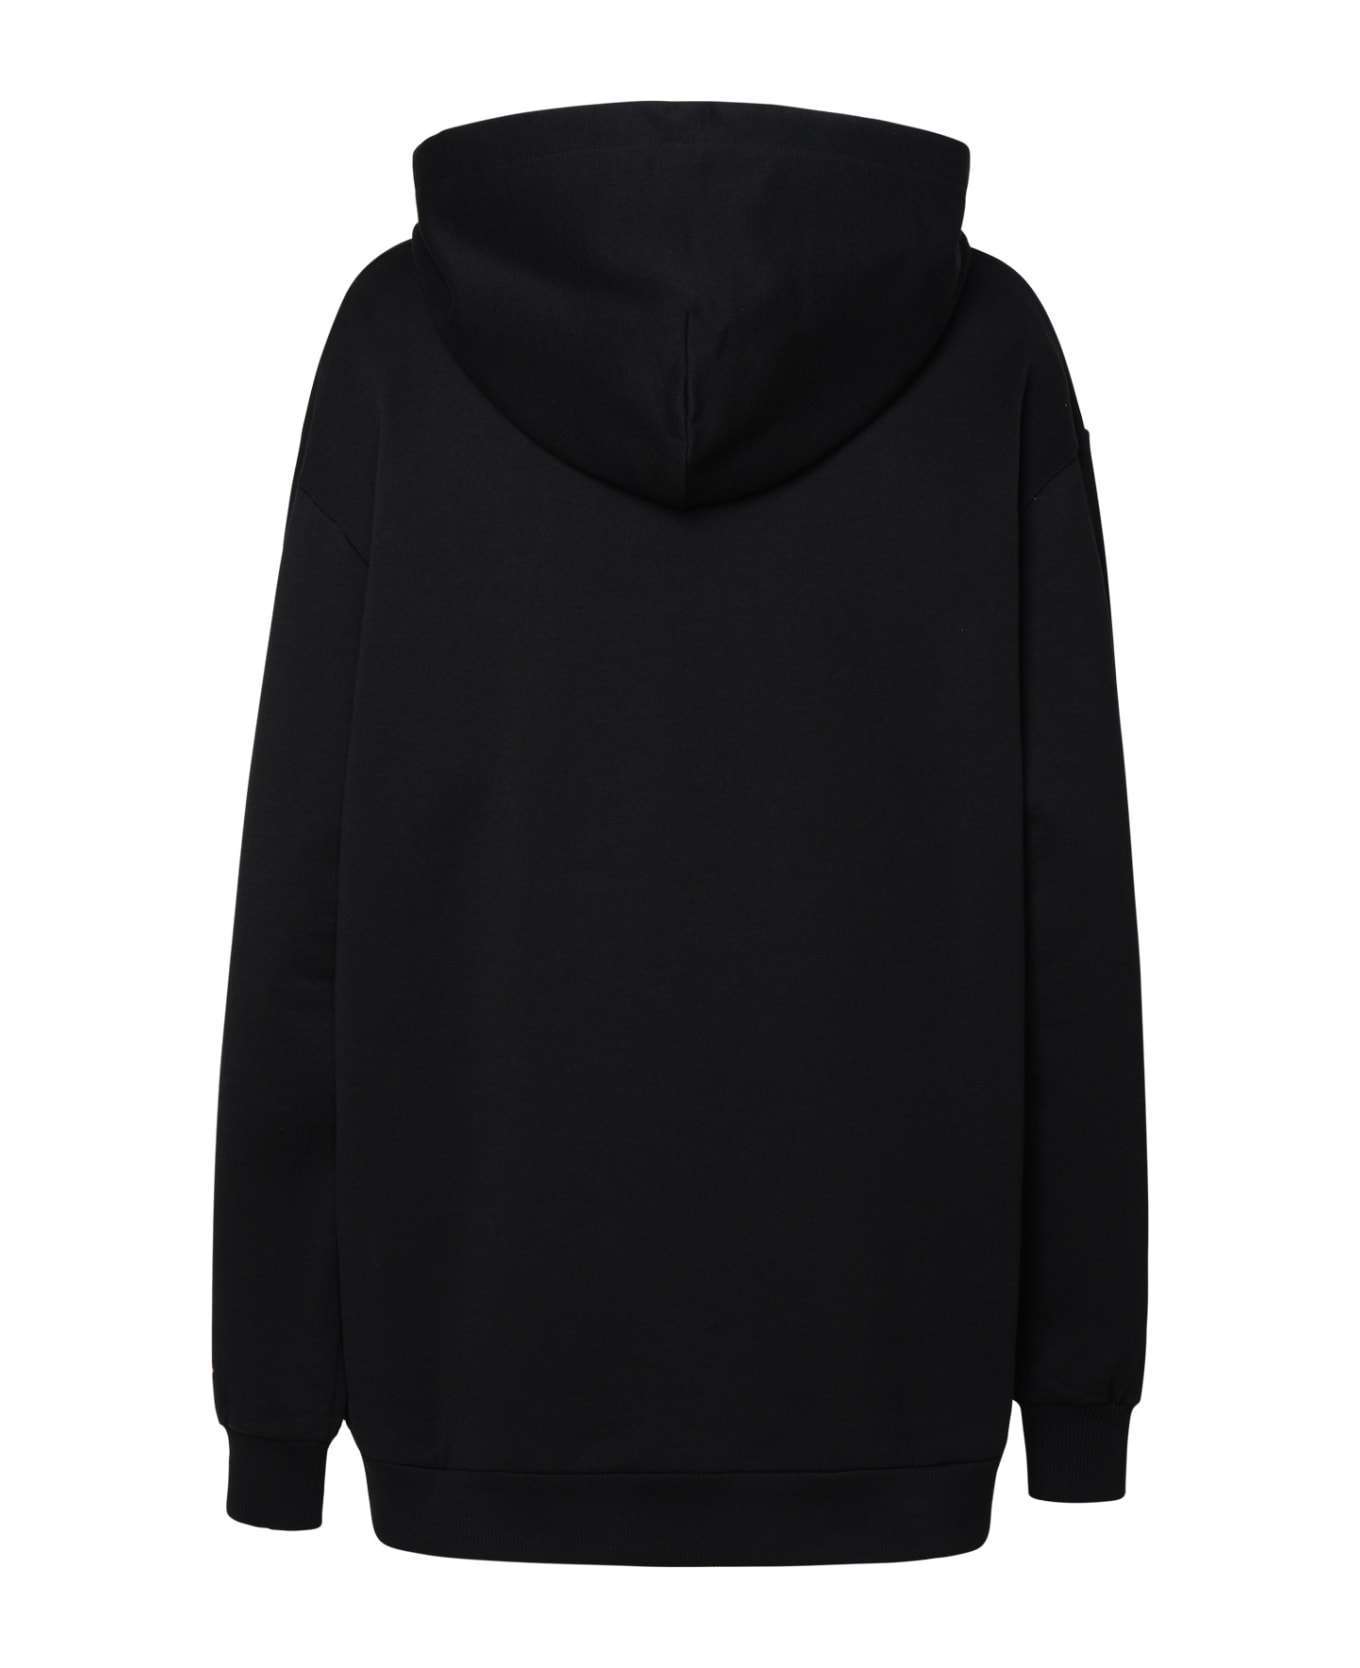 Etro Black Cotton Sweatshirt - Black